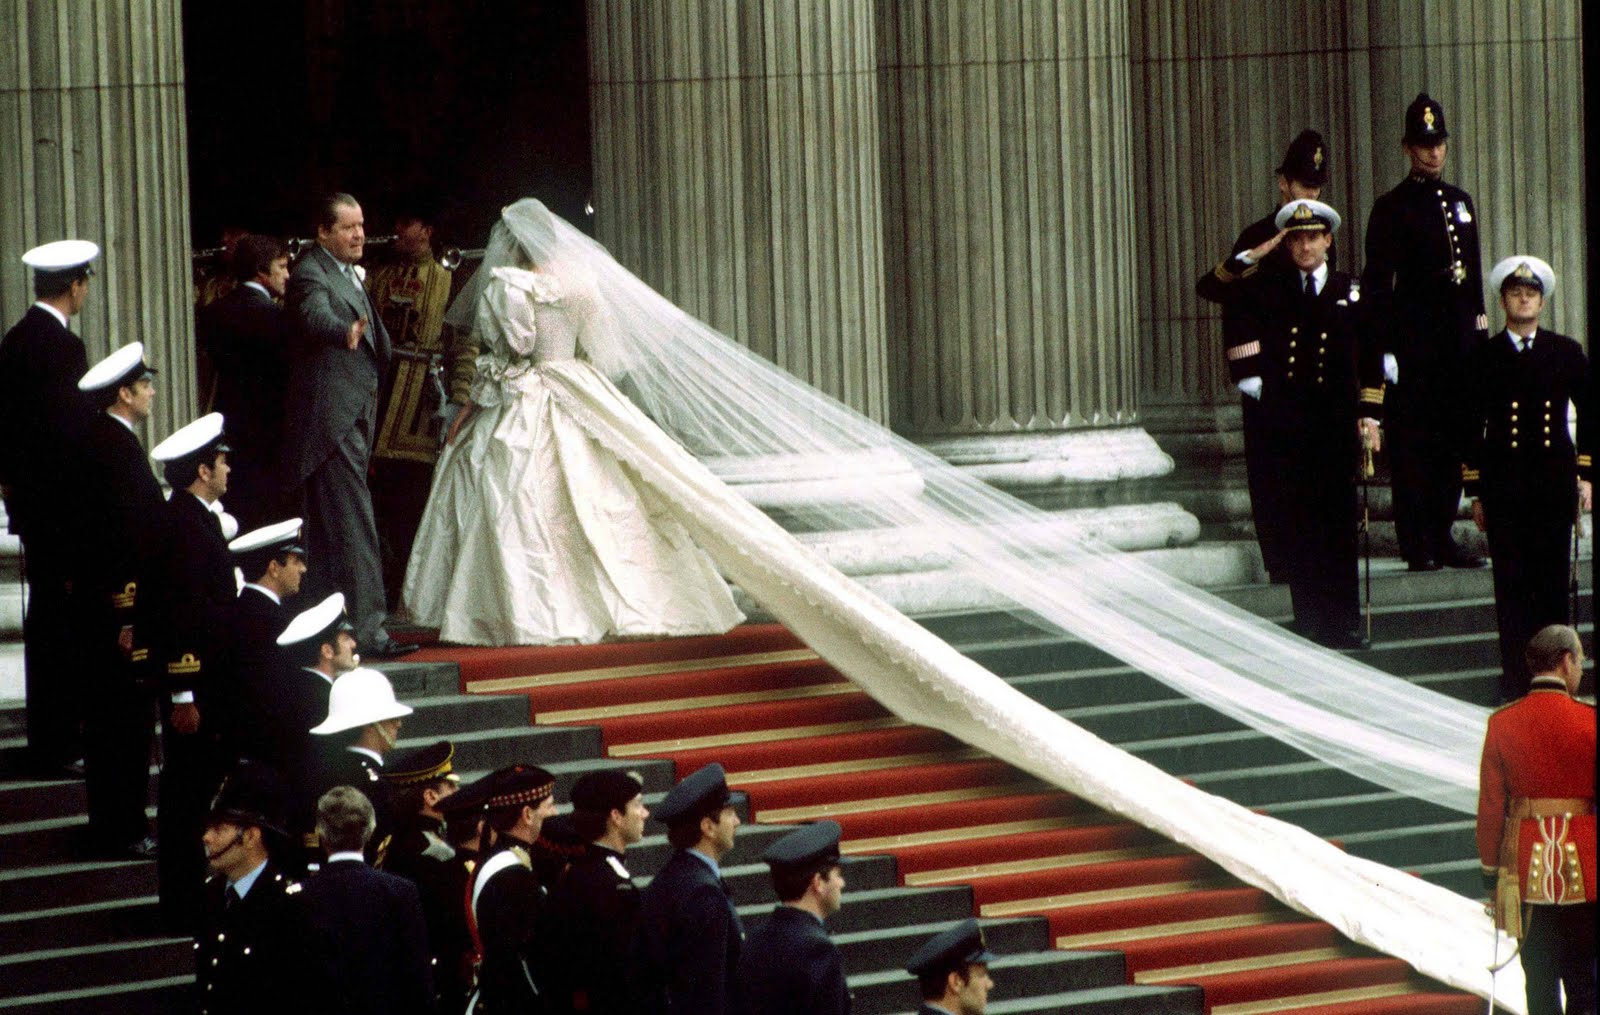 http://1.bp.blogspot.com/-8ENX2N2fOM0/TboRJwAtvcI/AAAAAAAAAjc/dgTH4oRT0aU/s1600/1981-Princess-Diana-Wedding-73399860.jpg